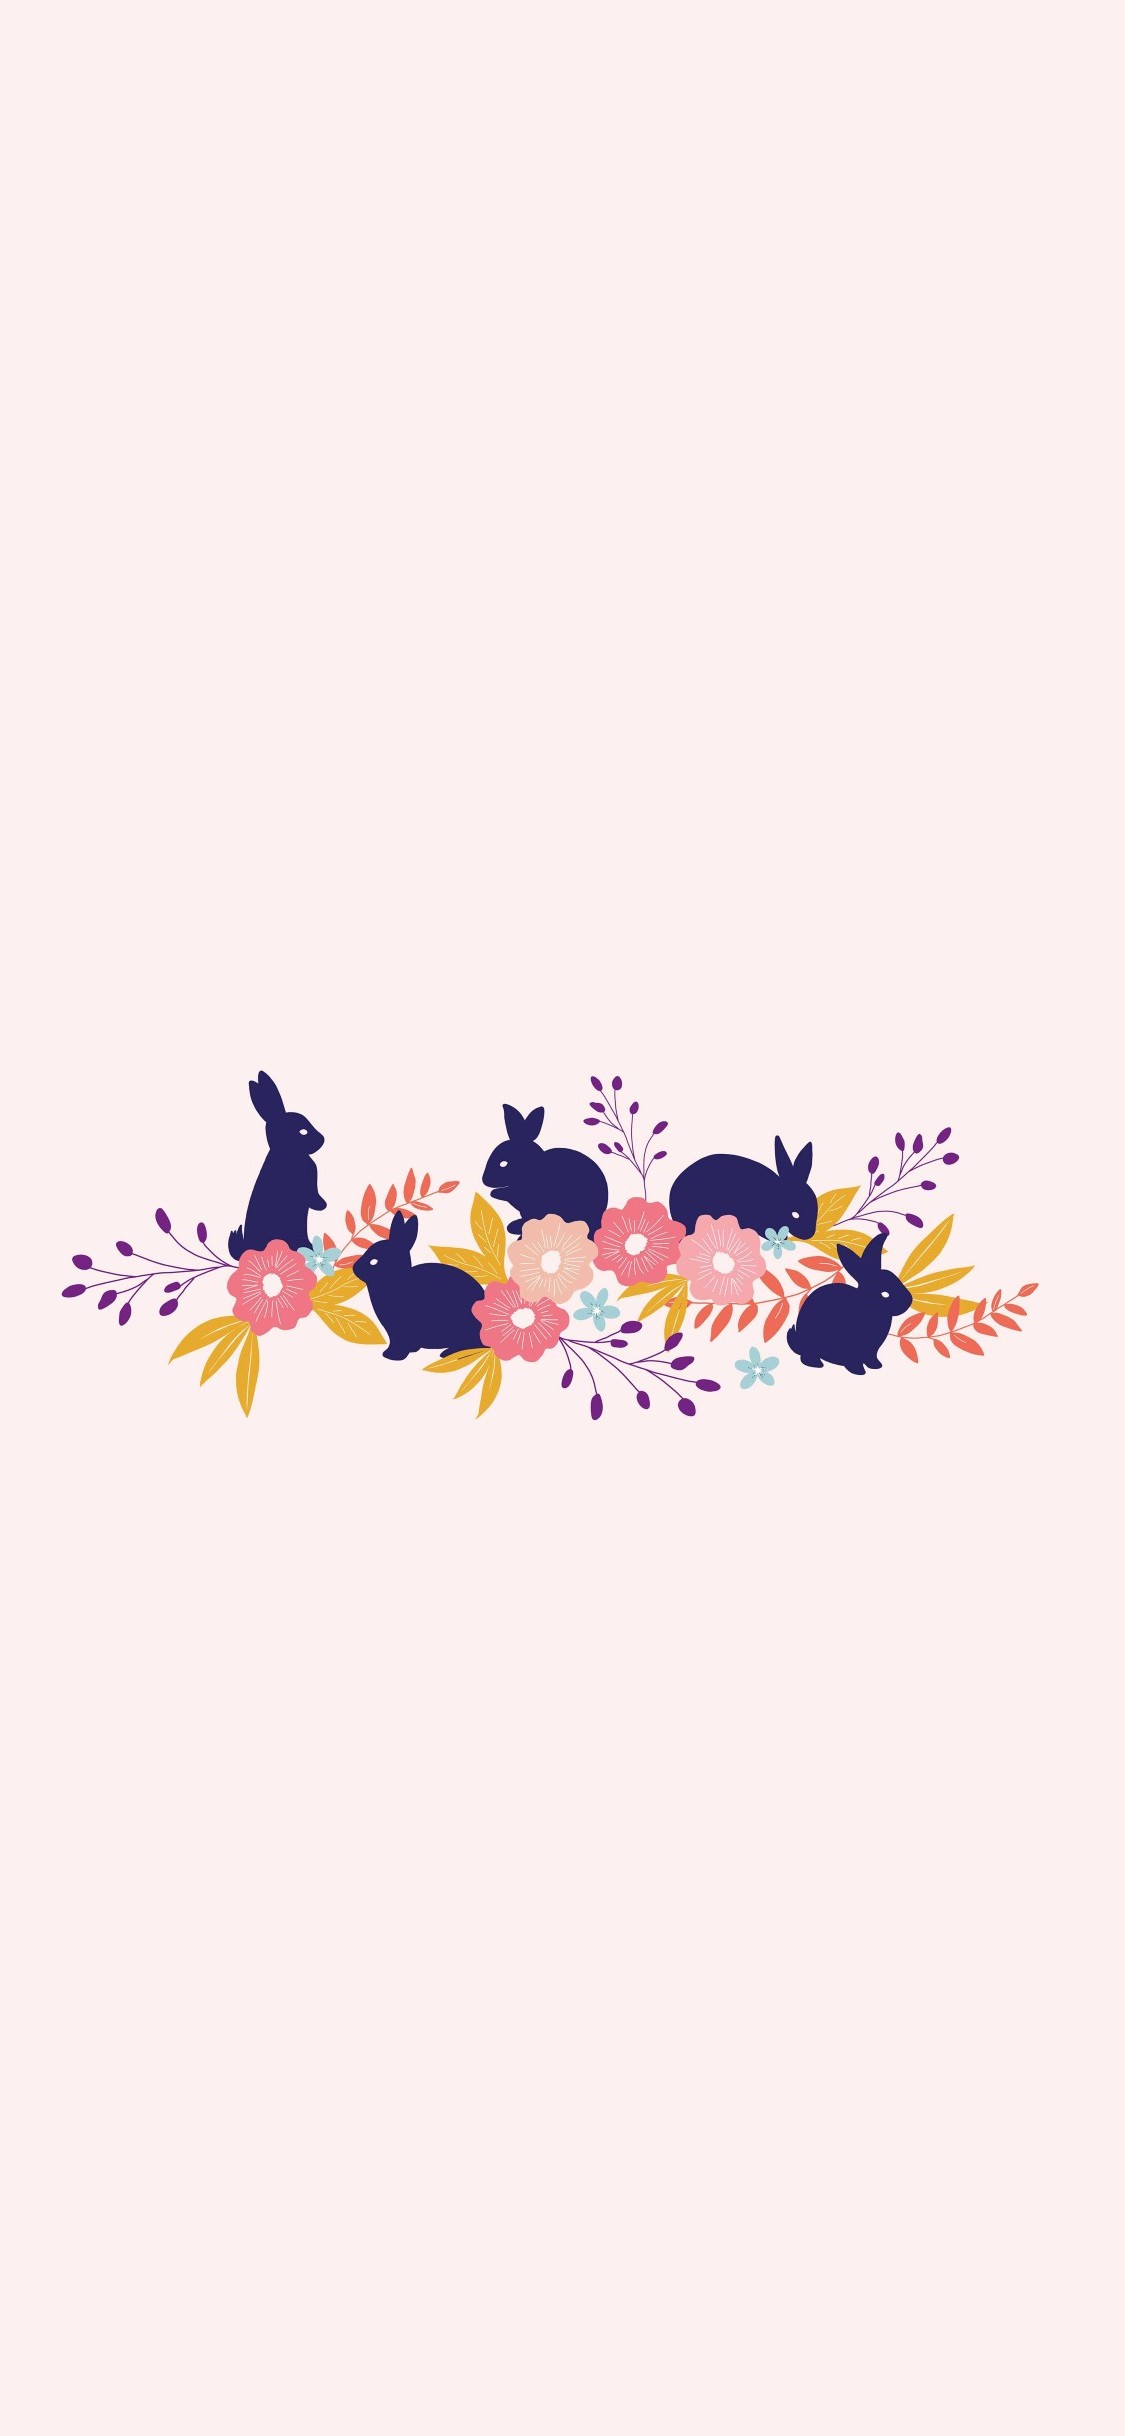 可愛い兎と花のイラスト Iphone X スマホ壁紙 待ち受け スマラン